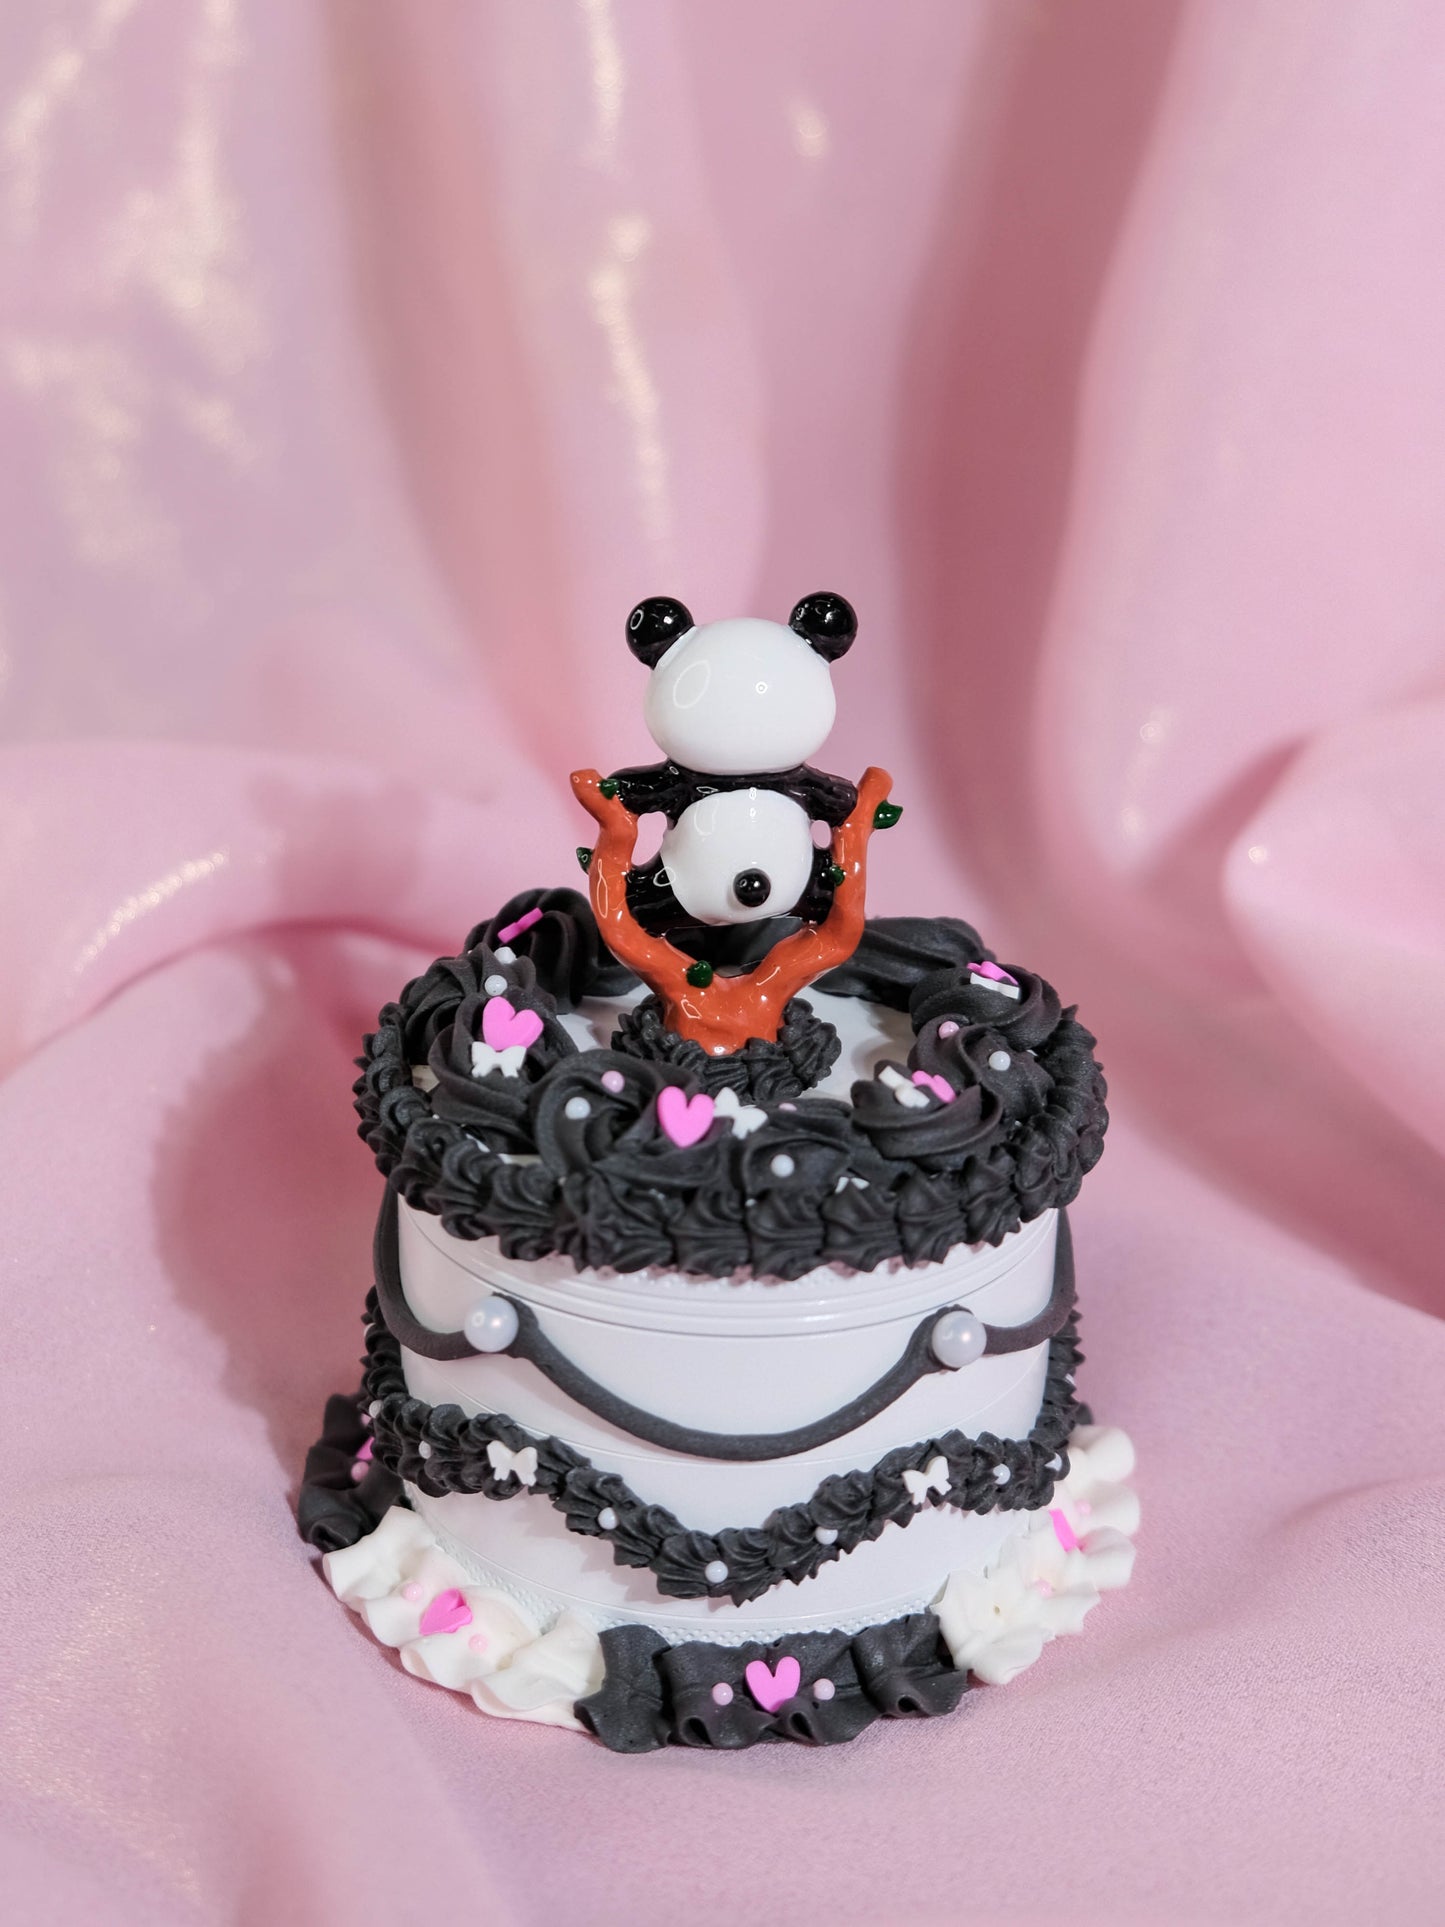 White Chocolate Panda Express Cake - Grinder